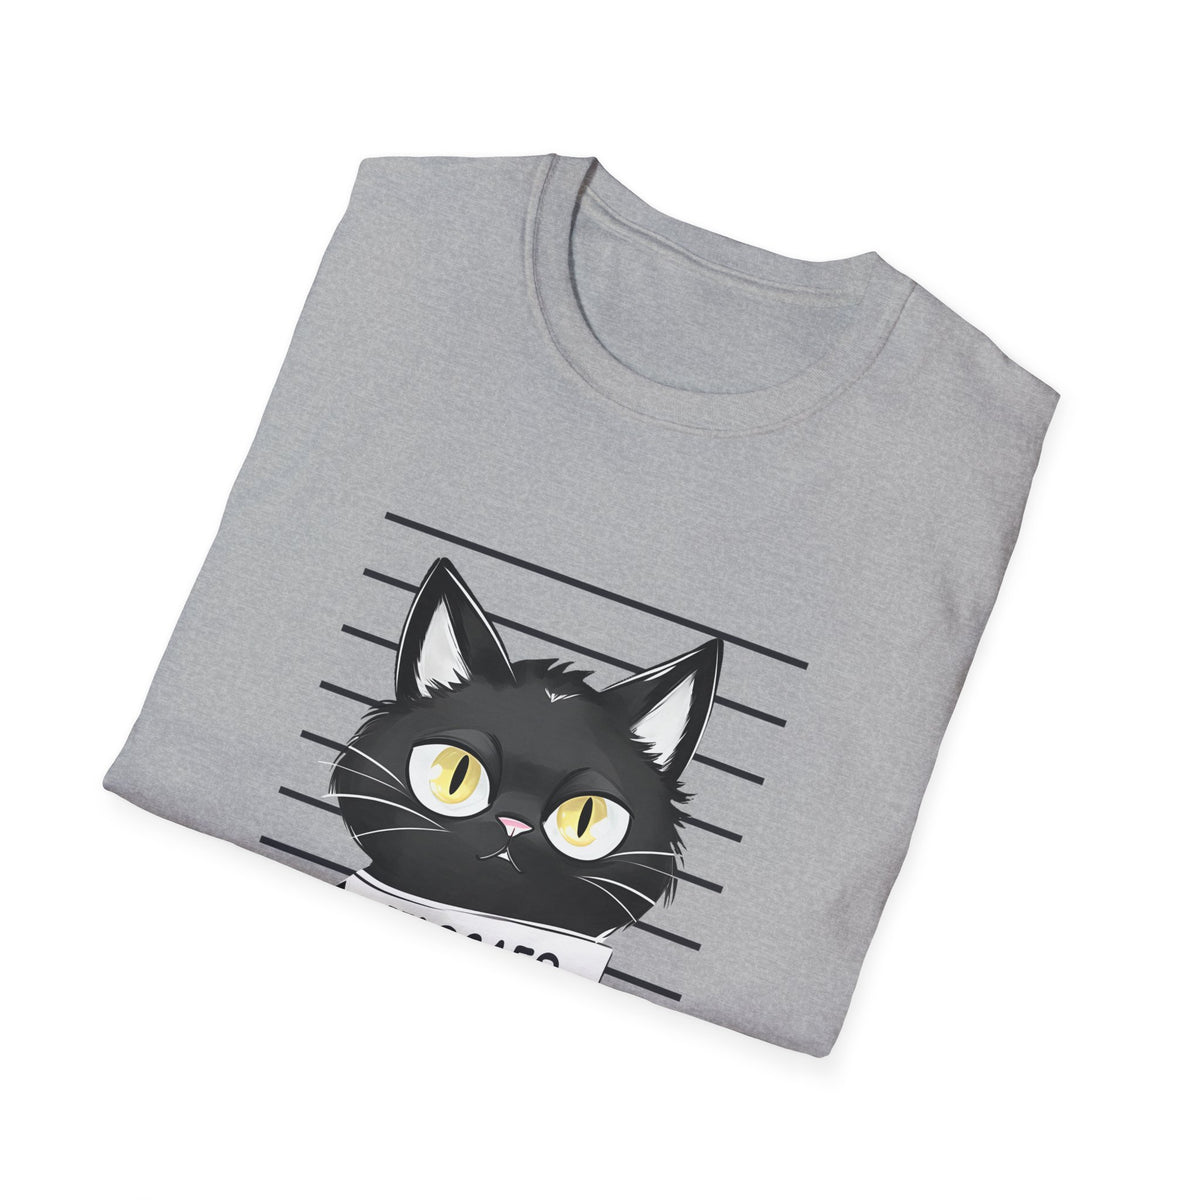 Bad Cattitude Unisex Softstyle T-Shirt